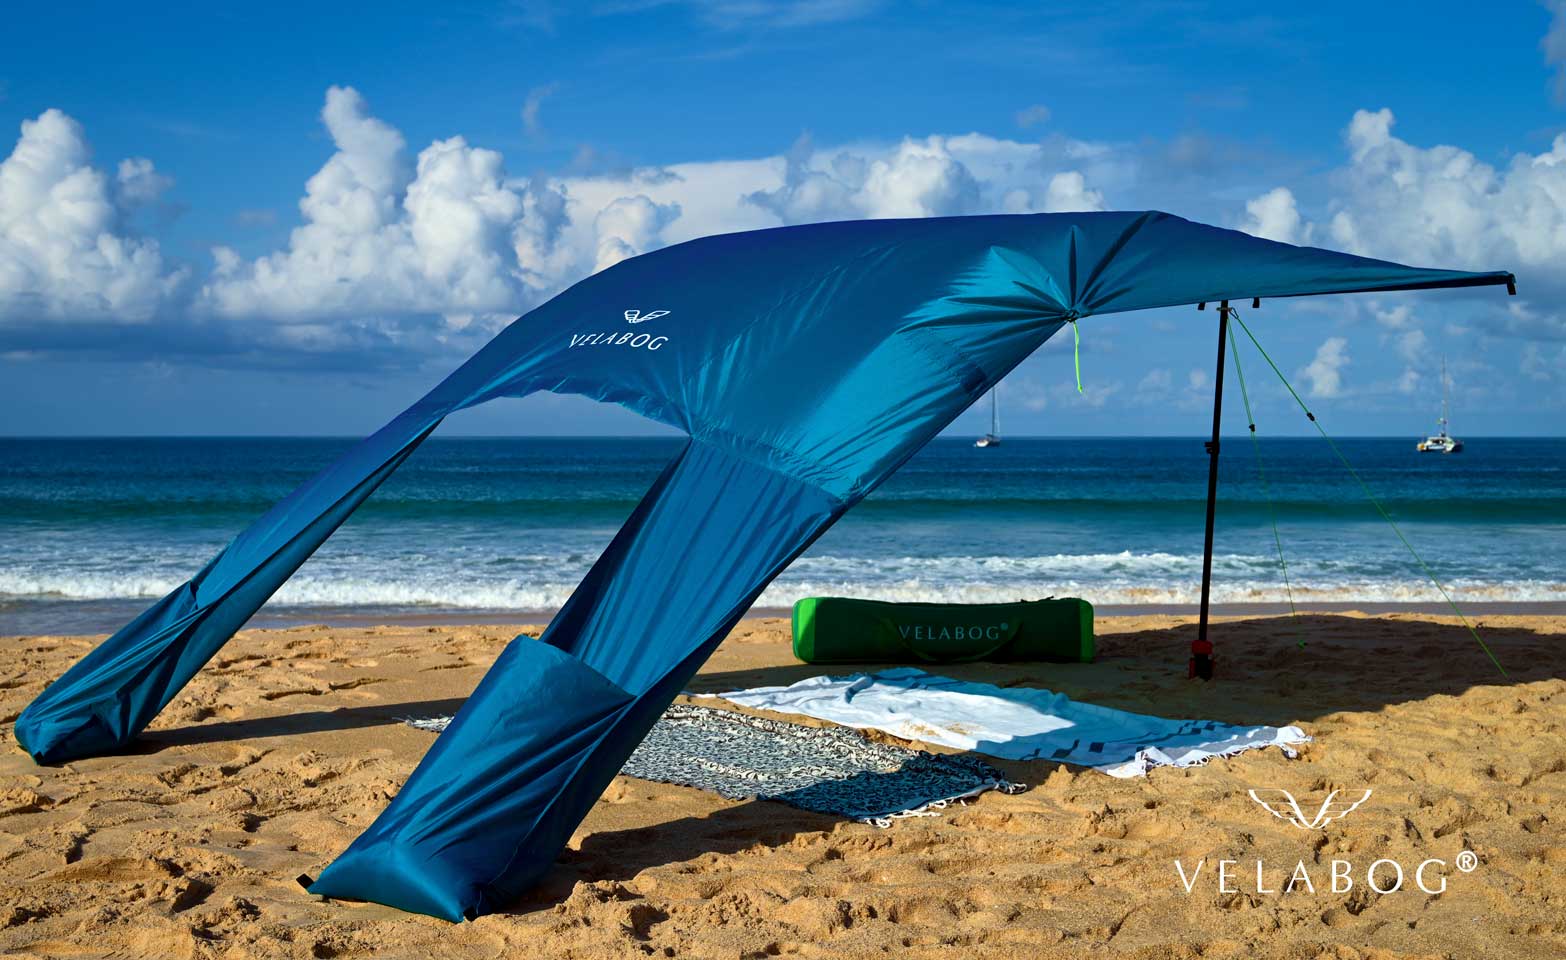 Toldo playa Velabog Breeze azul. La mejor refugio y protección solar en la playa. Mucha más sombra en comparación con sombrillas de playa. Mucho más aire en comparación con carpas de playa. Opción de montaje desde viento ligero a fuerte. Vista inclinada desde atrás.